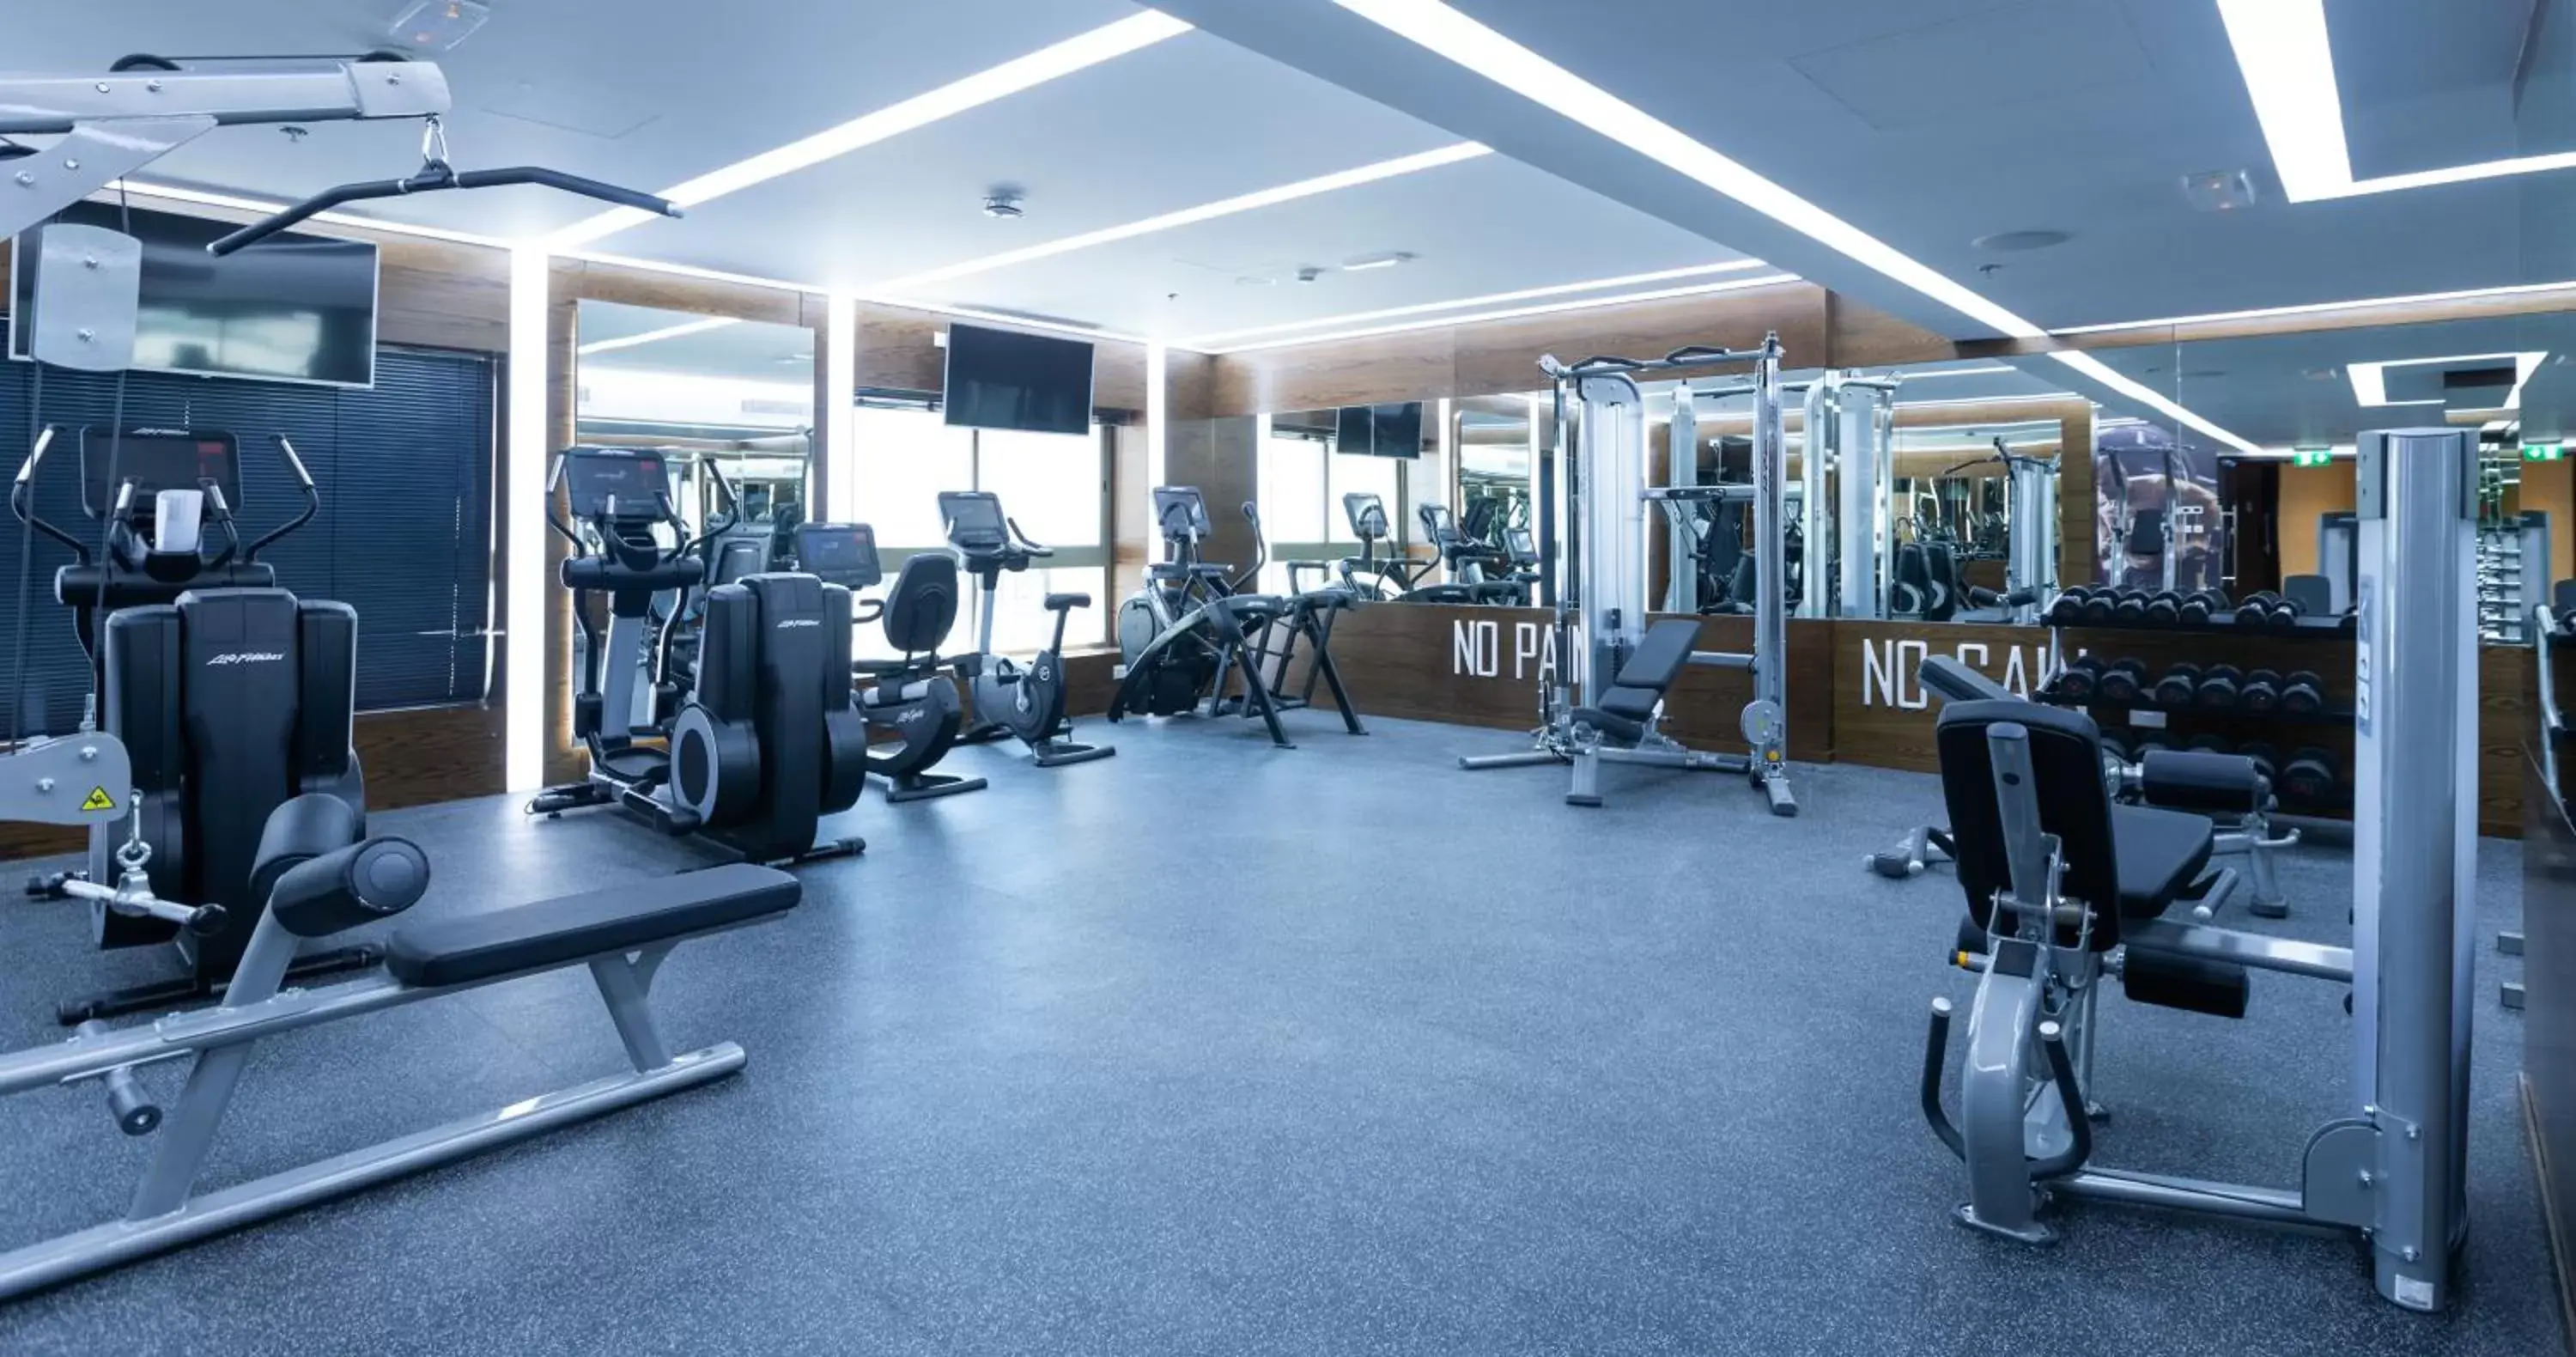 Fitness centre/facilities, Fitness Center/Facilities in Occidental Al Jaddaf, Dubai